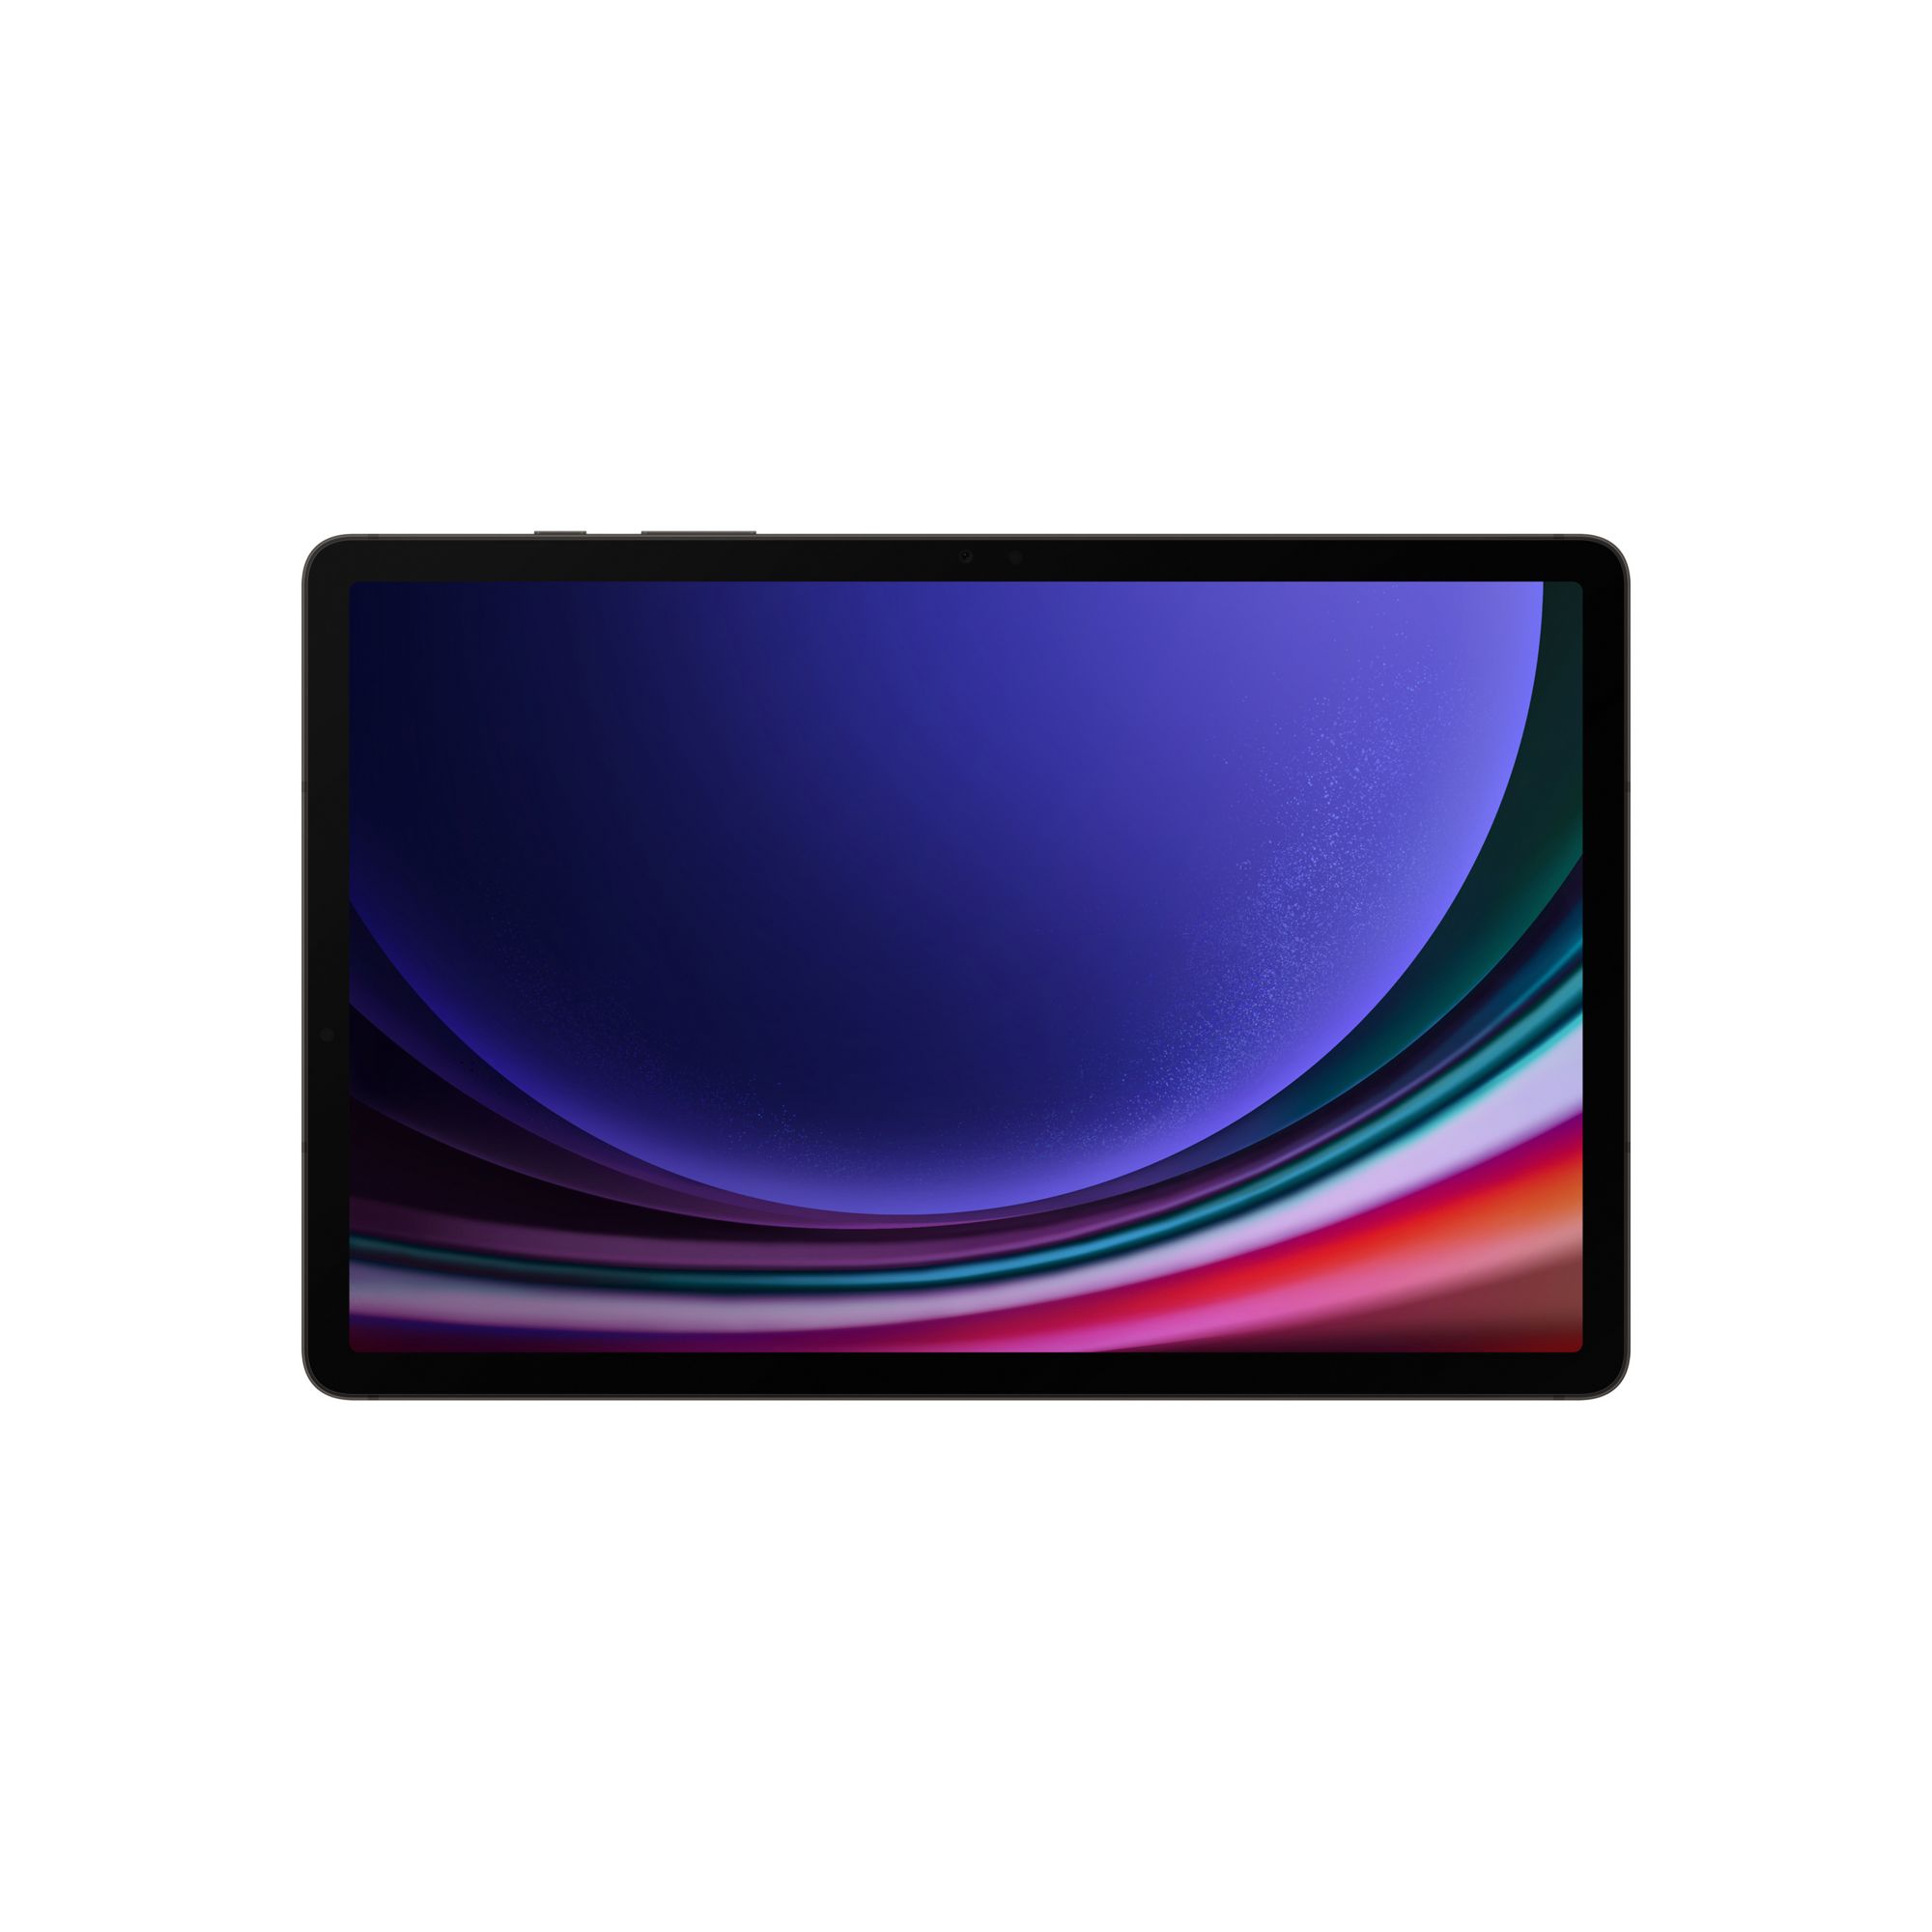 Samsung Galaxy 11.0 Tab S9 128GB Tablet, Gray